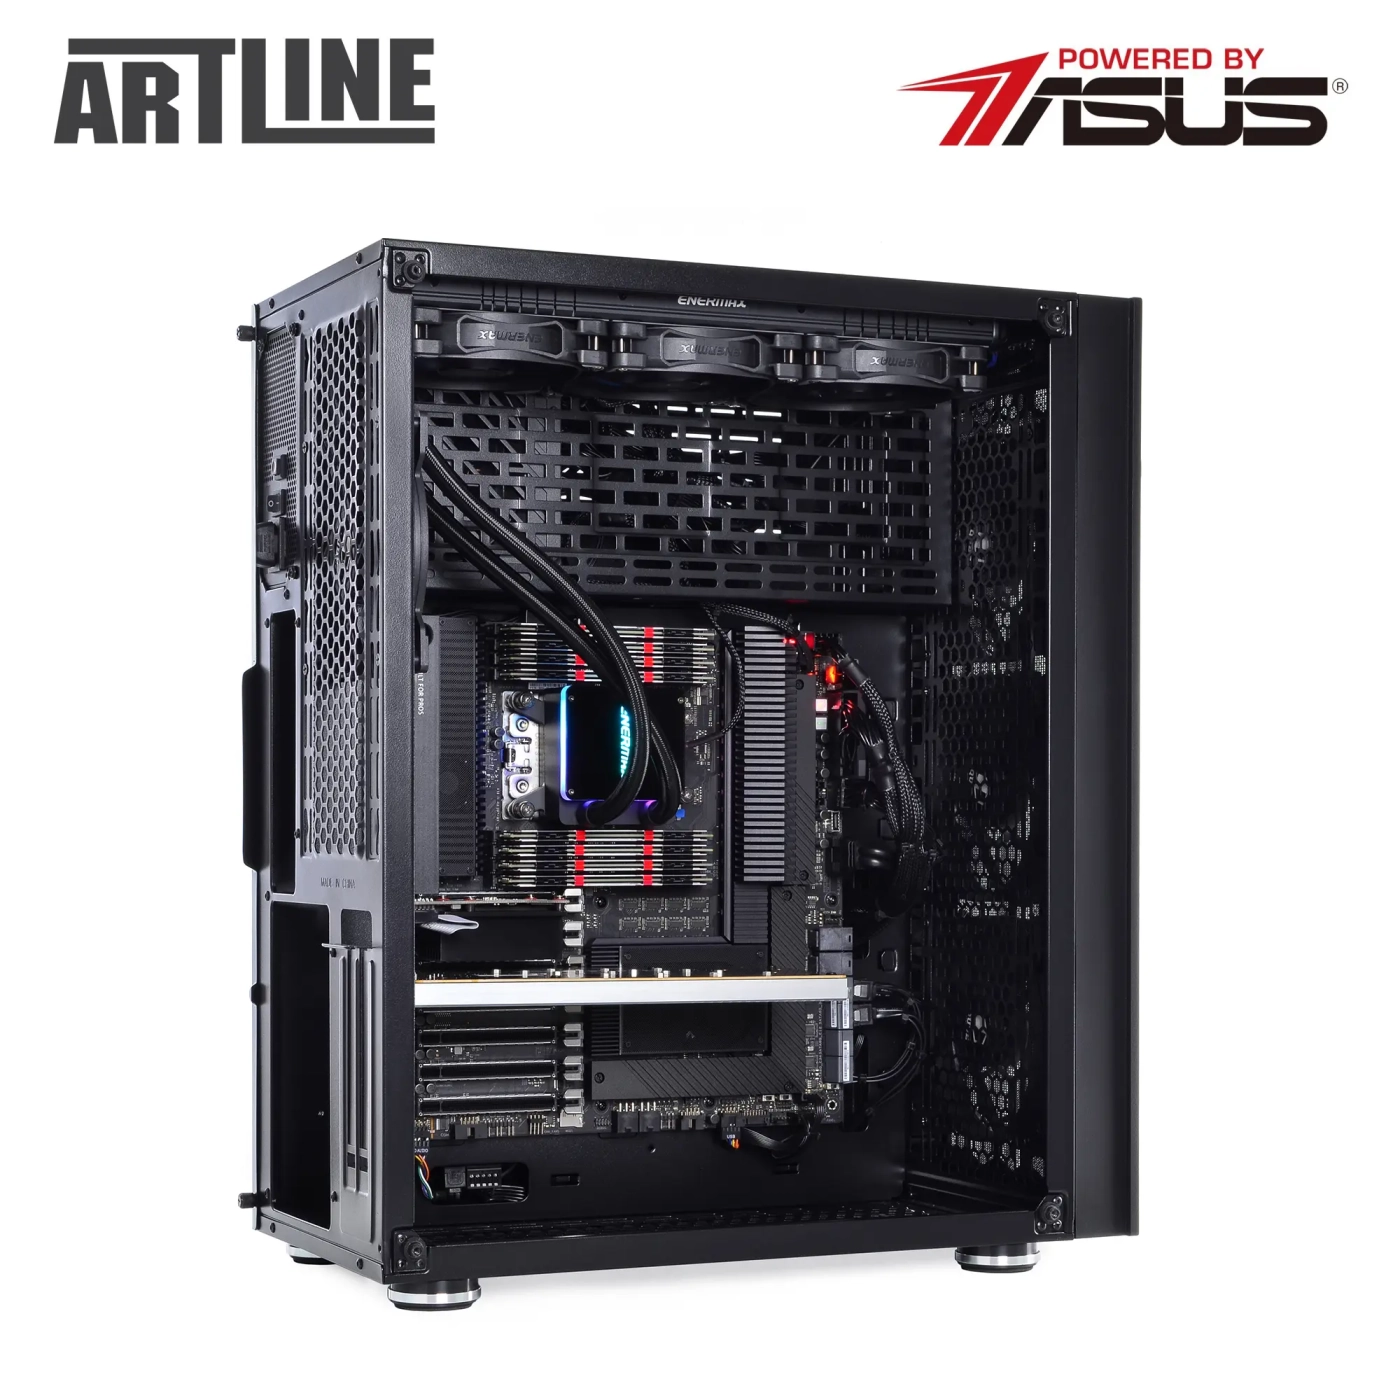 Купить Сервер ARTLINE Business T85v06 - фото 10